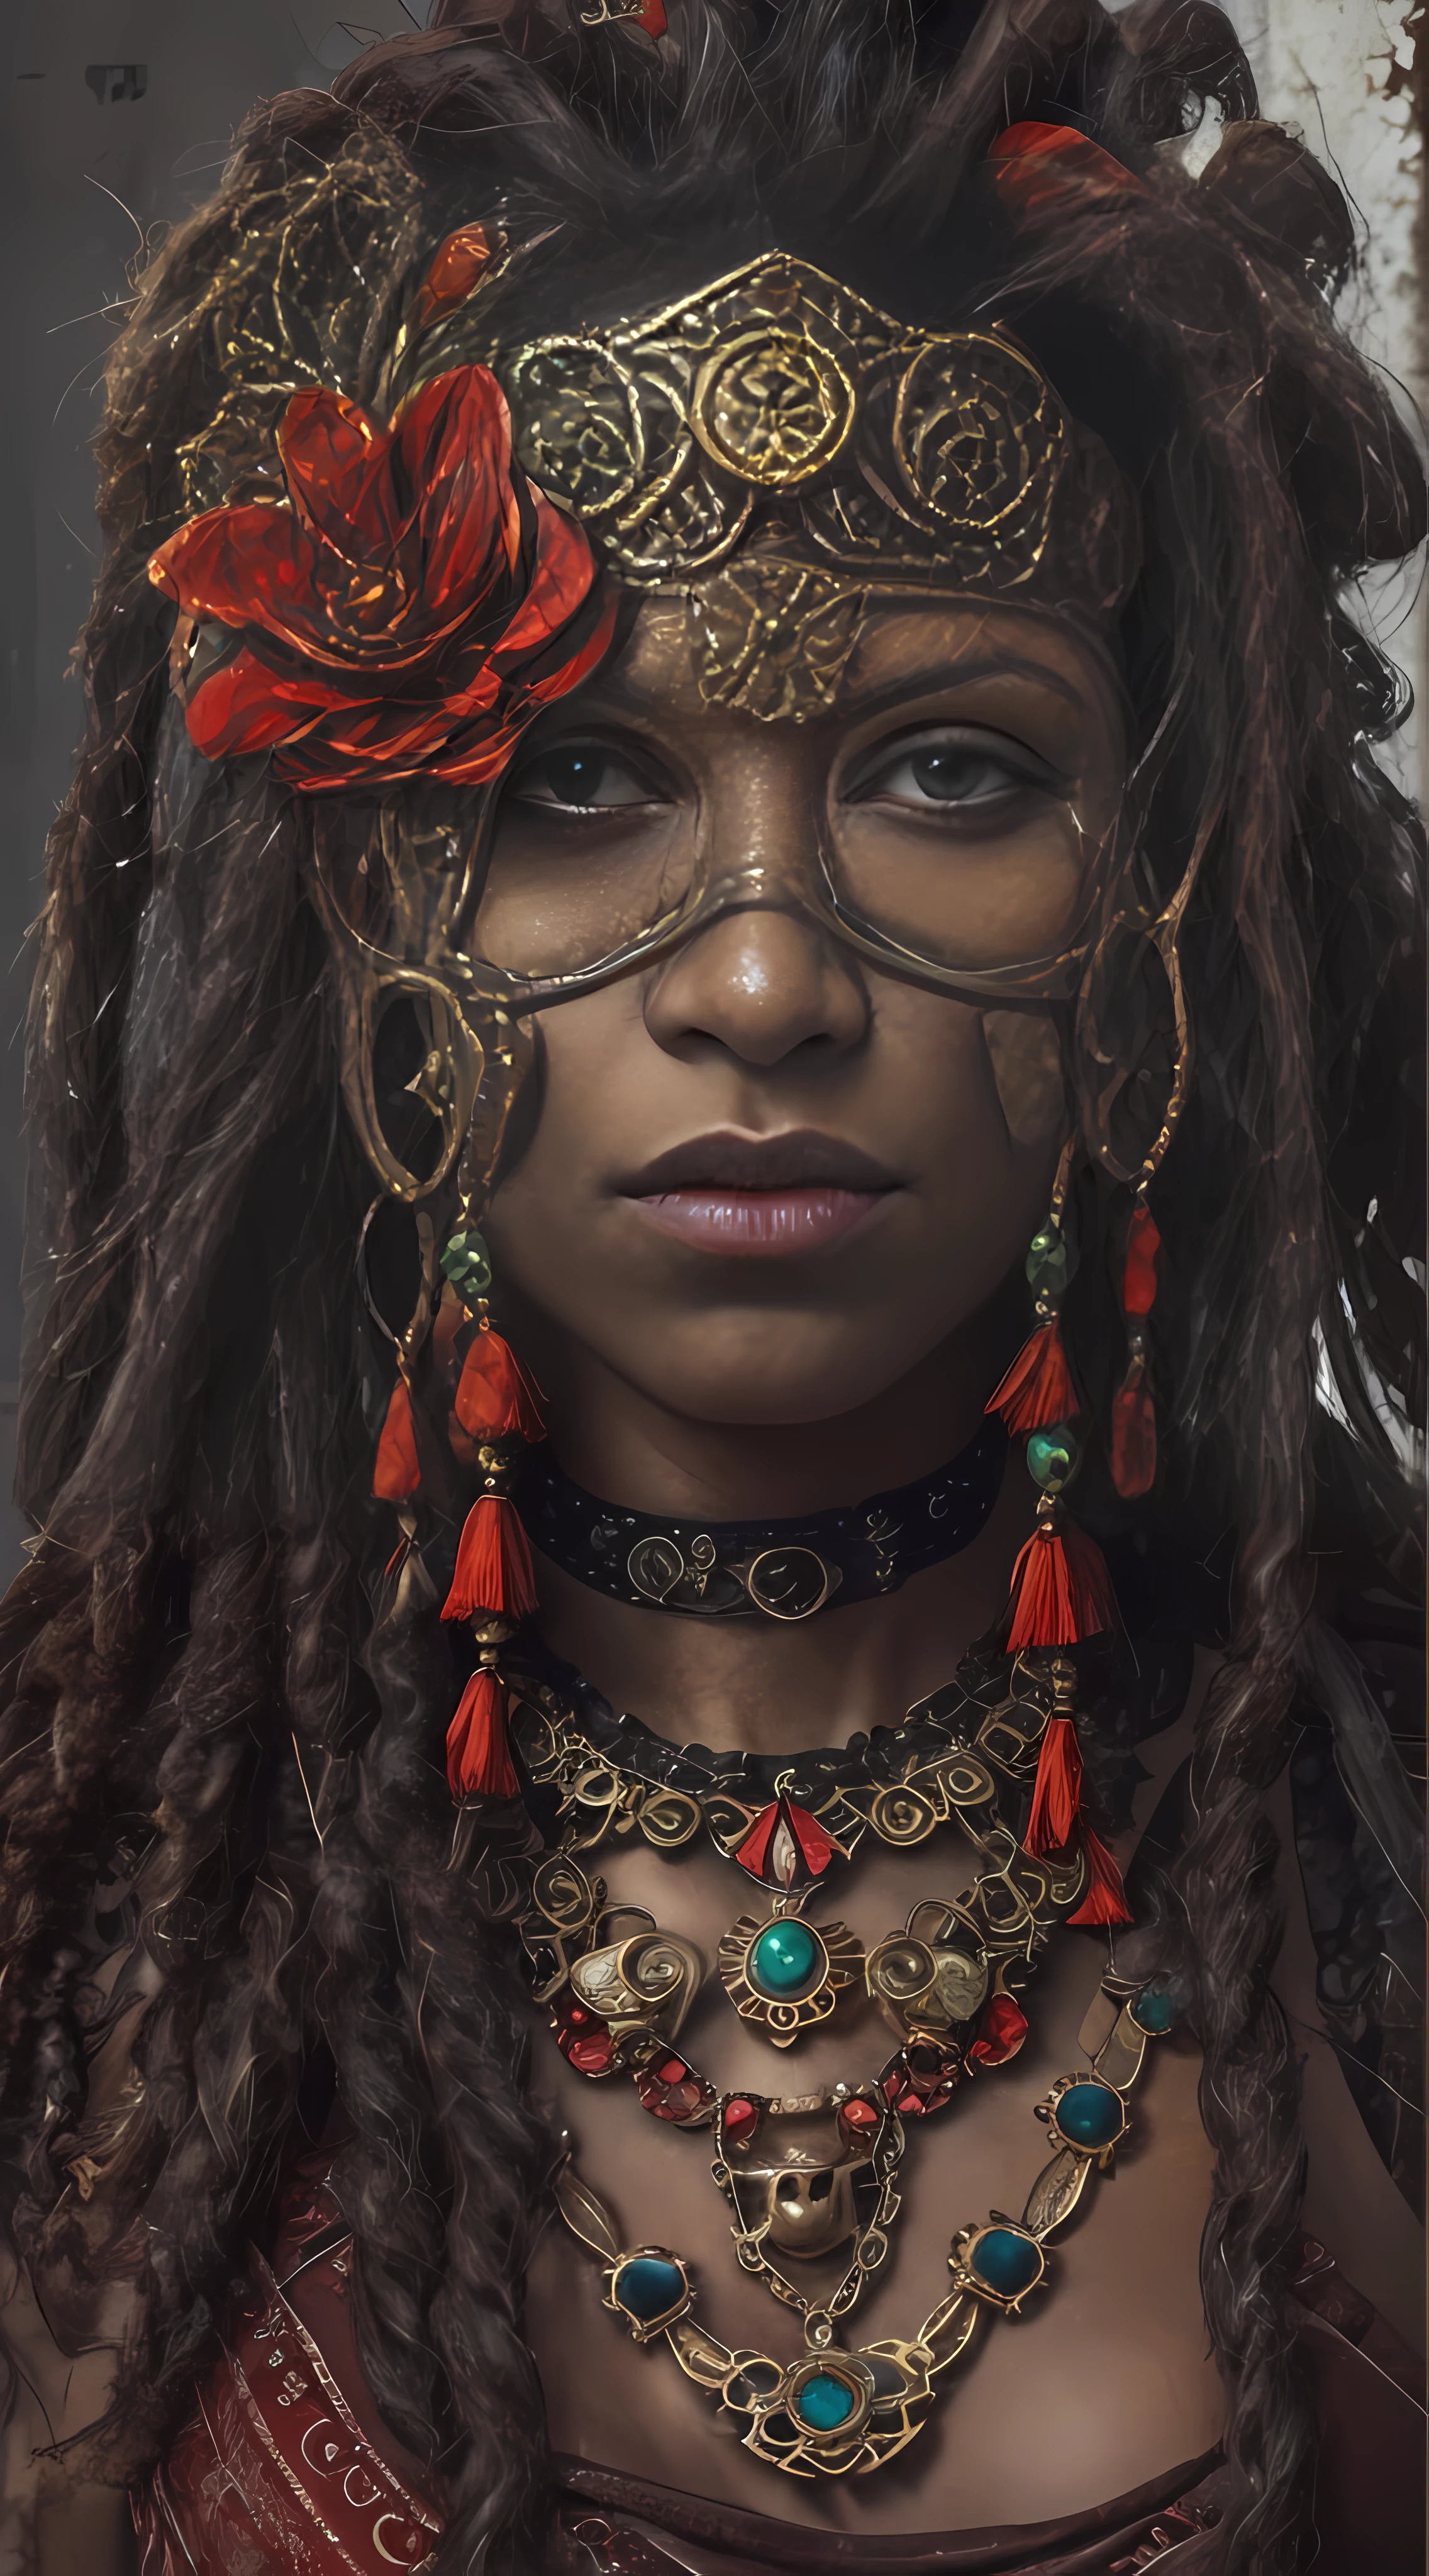 أنثى محاربة القبيلة مع قناع Steampunk القوطي القديم, لوحات حمراء على الوجه, قناع أسود, مجوهرات صغيرة من الزهور الذهبية حول رقبتها ومجدلها, تفاصيل رائعة, نظرة سينمائية, 8 كيلو, تقرير التنمية البشرية